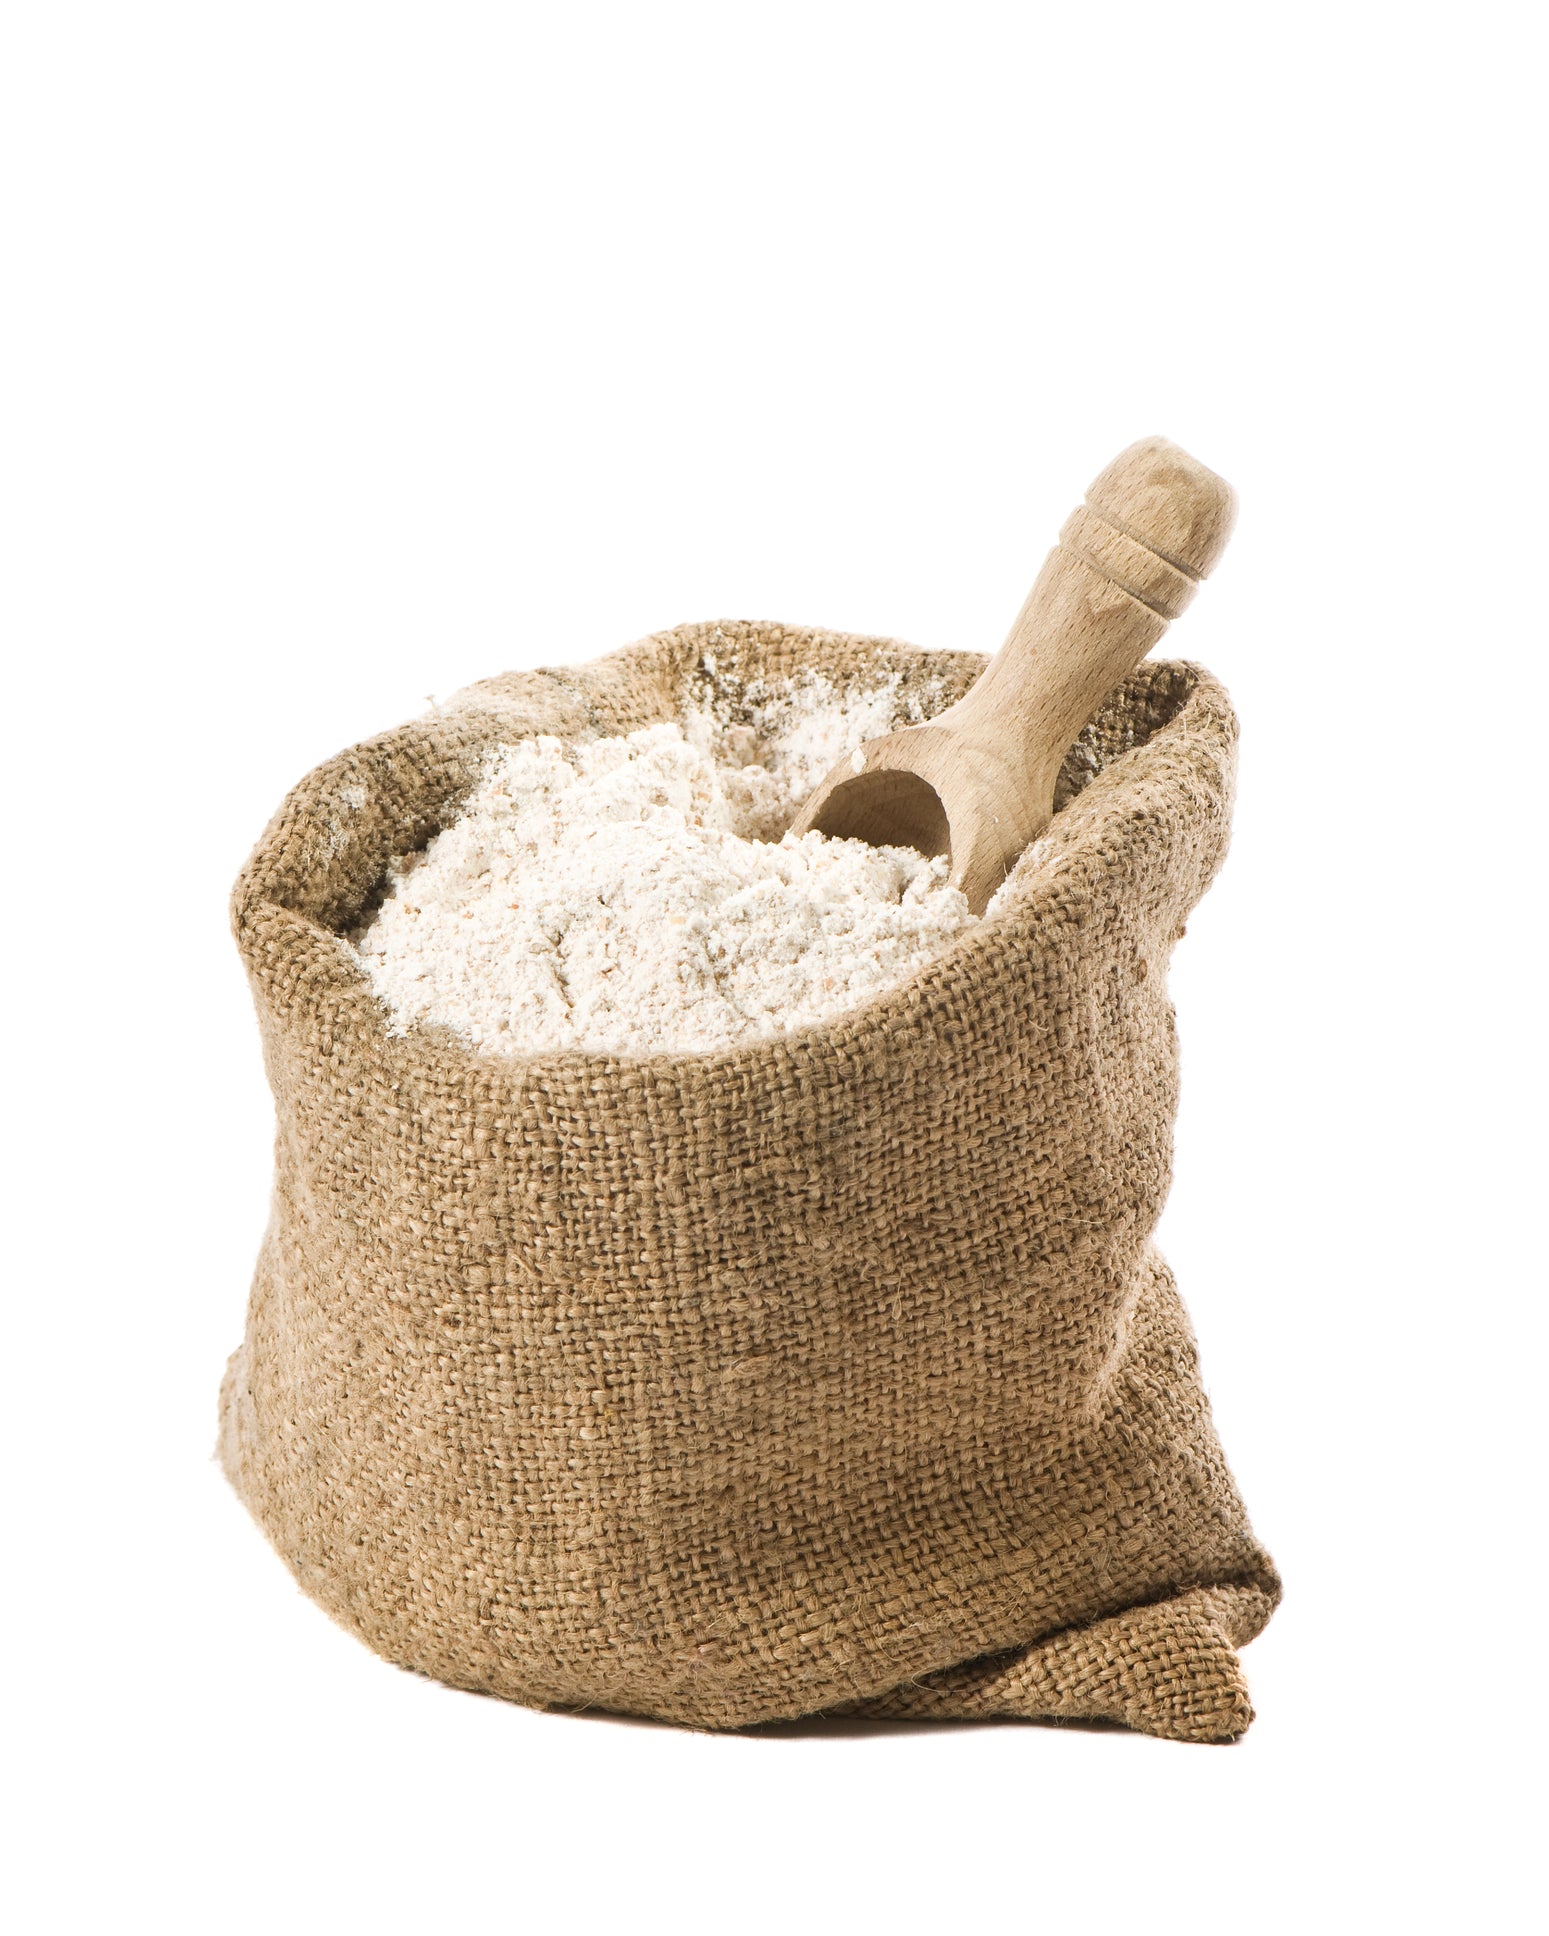 Plain Flour - 10kg